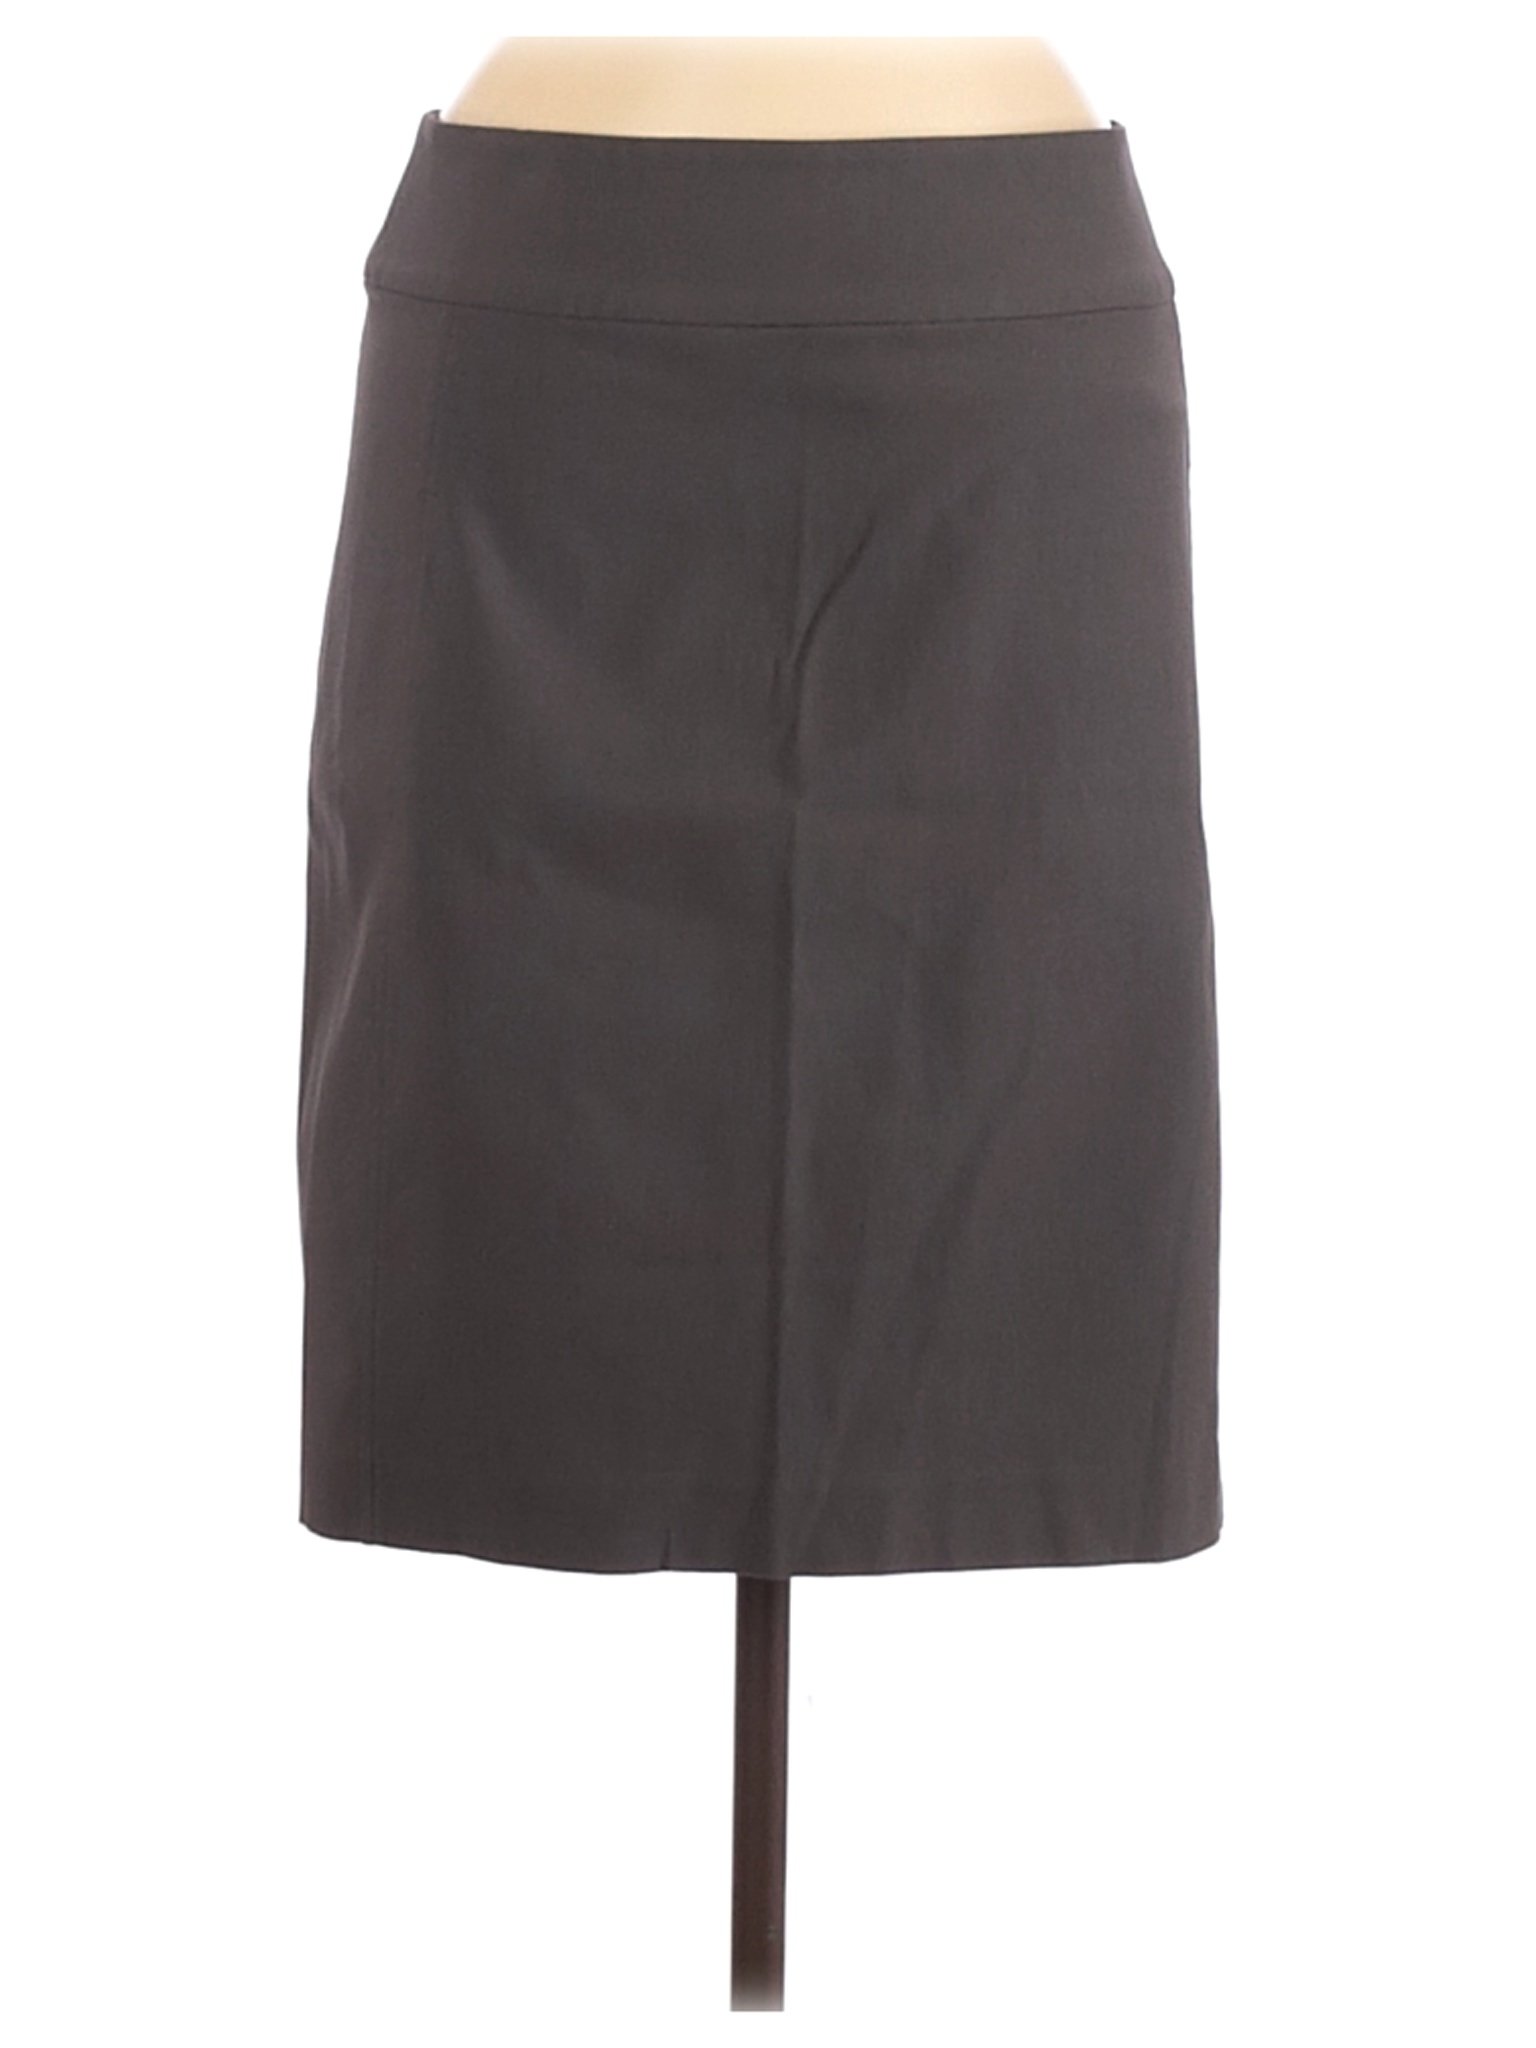 NWT Nic + Zoe Women Gray Casual Skirt 8 | eBay